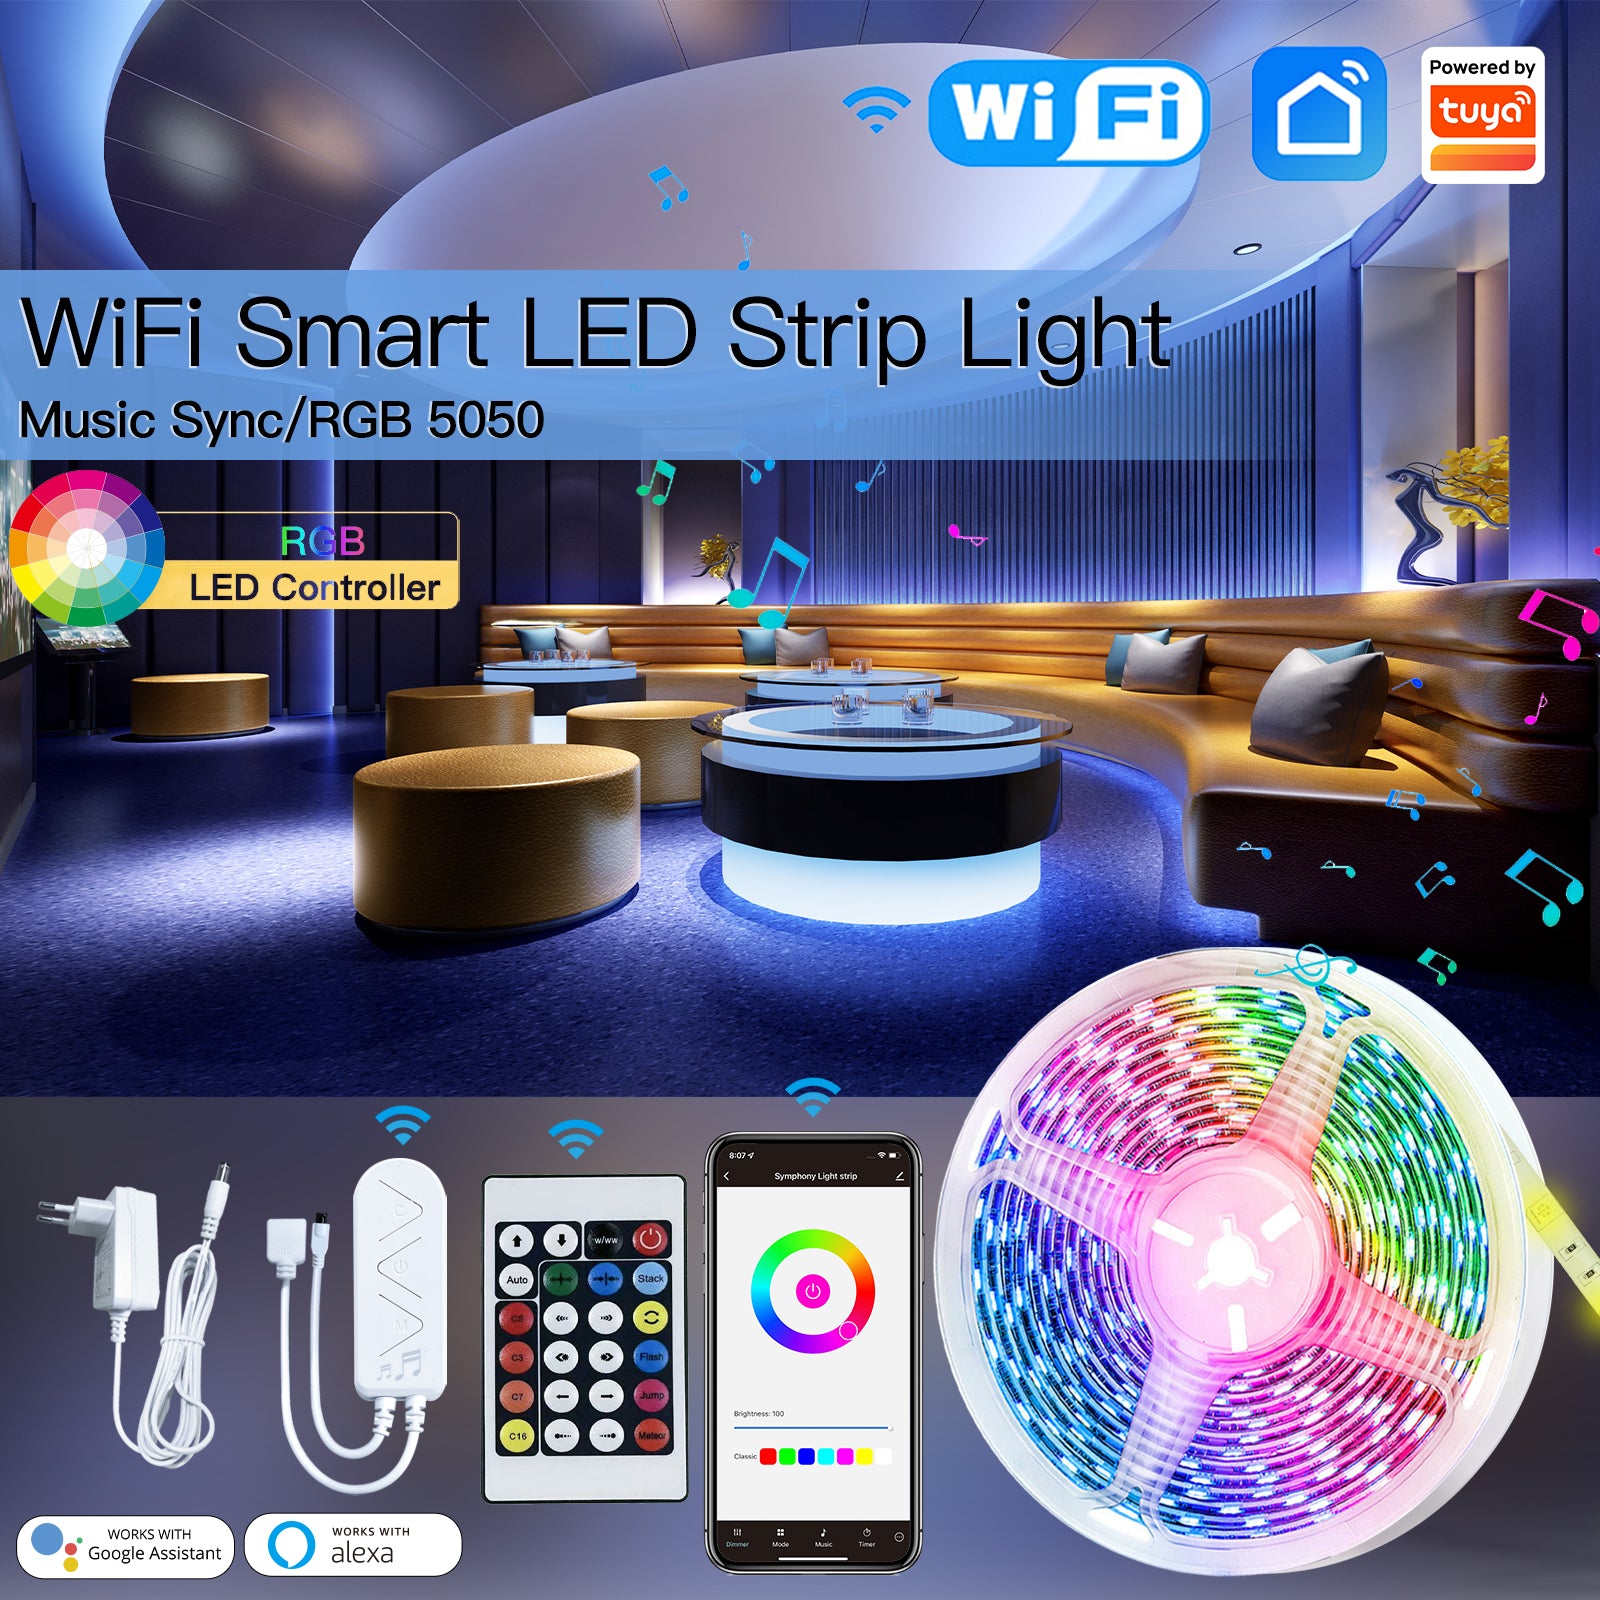 WiFi Smart LED Strip Light Music Sync/RGB 5050